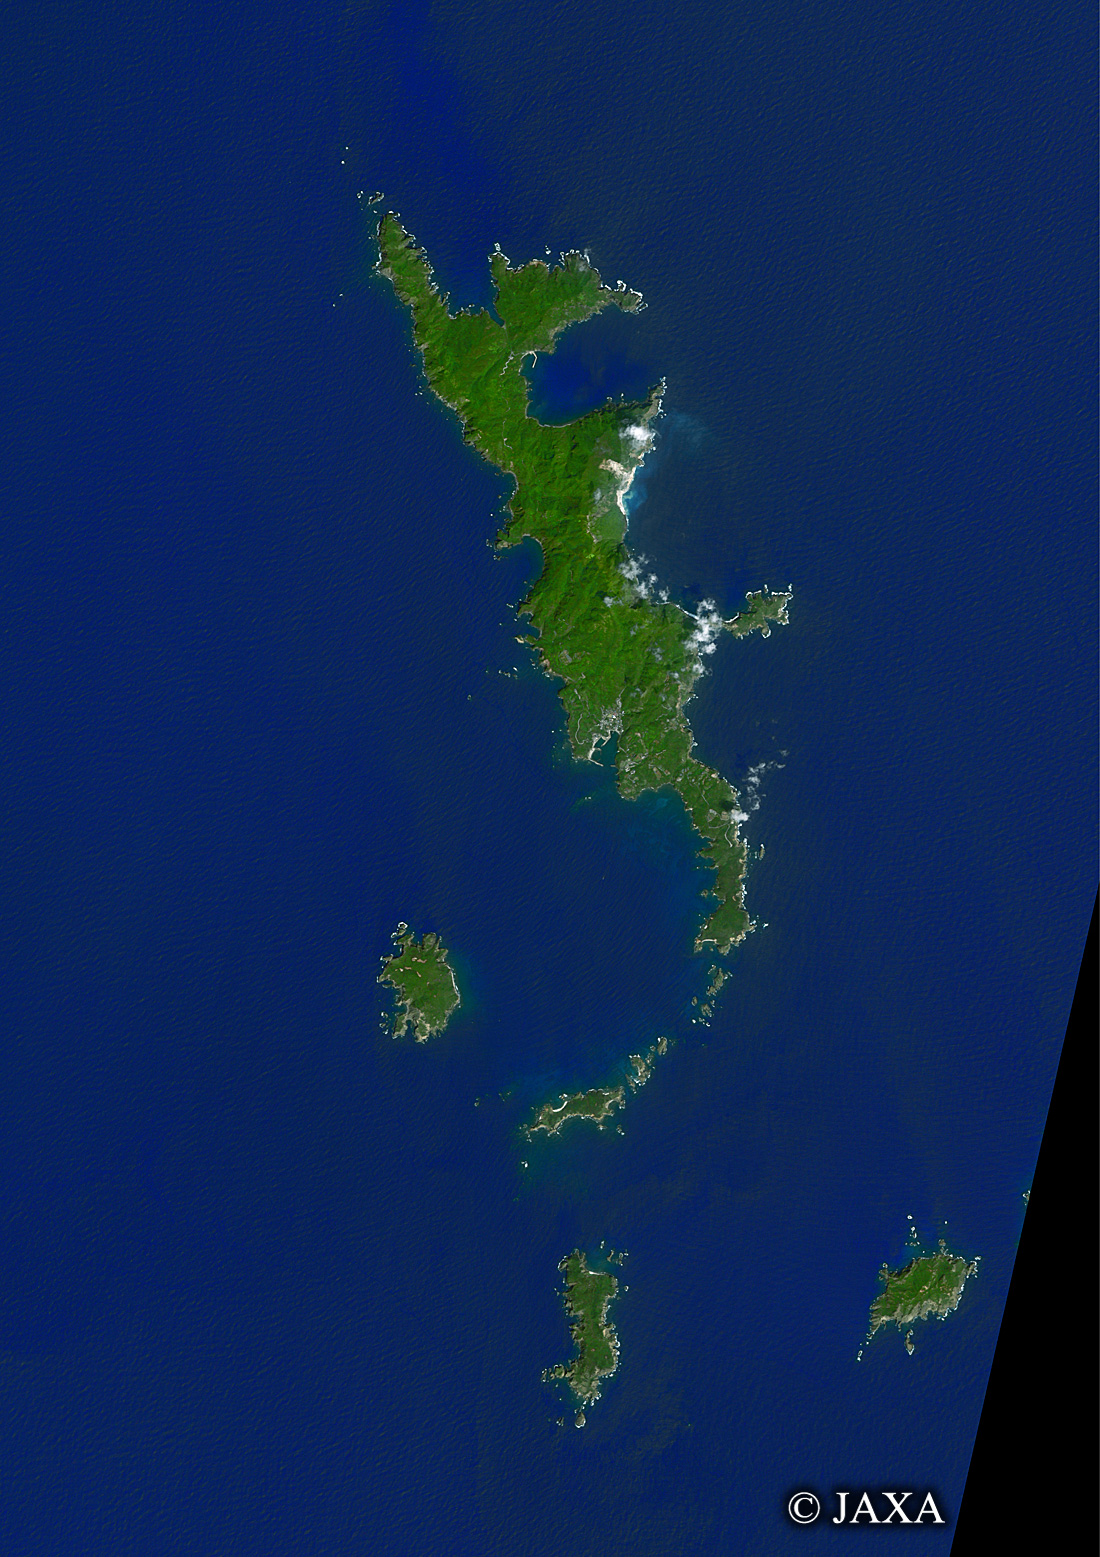 だいちから見た日本の都市 母島列島:衛星画像